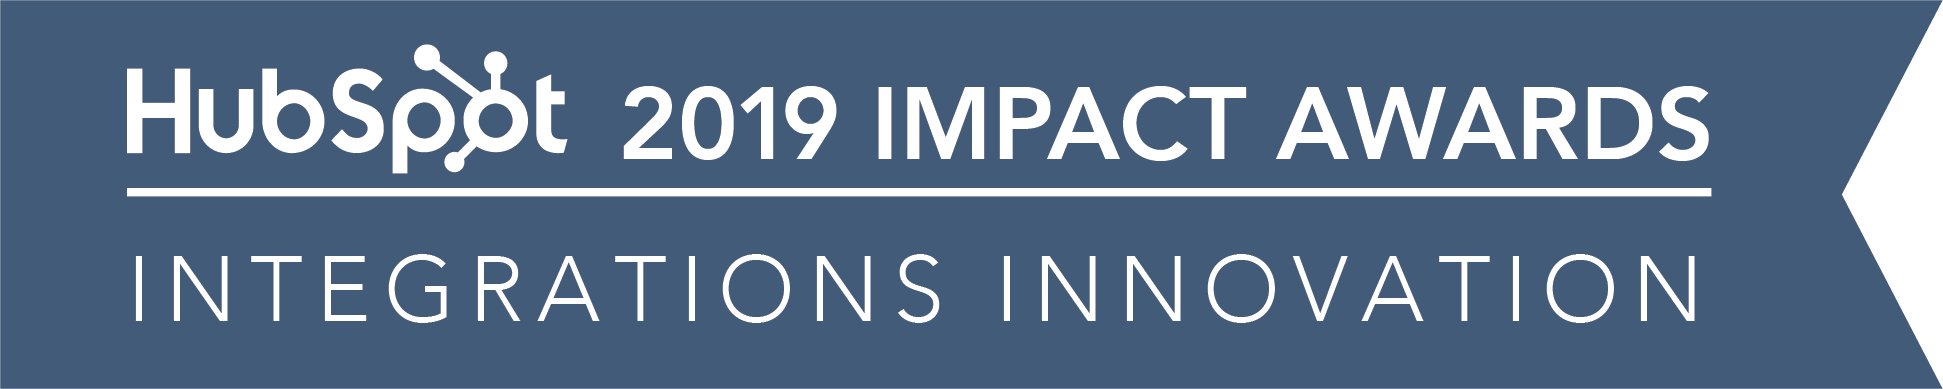 Hubspot_ImpactAwards_2019_IntegrationsInnovation-02 (2)